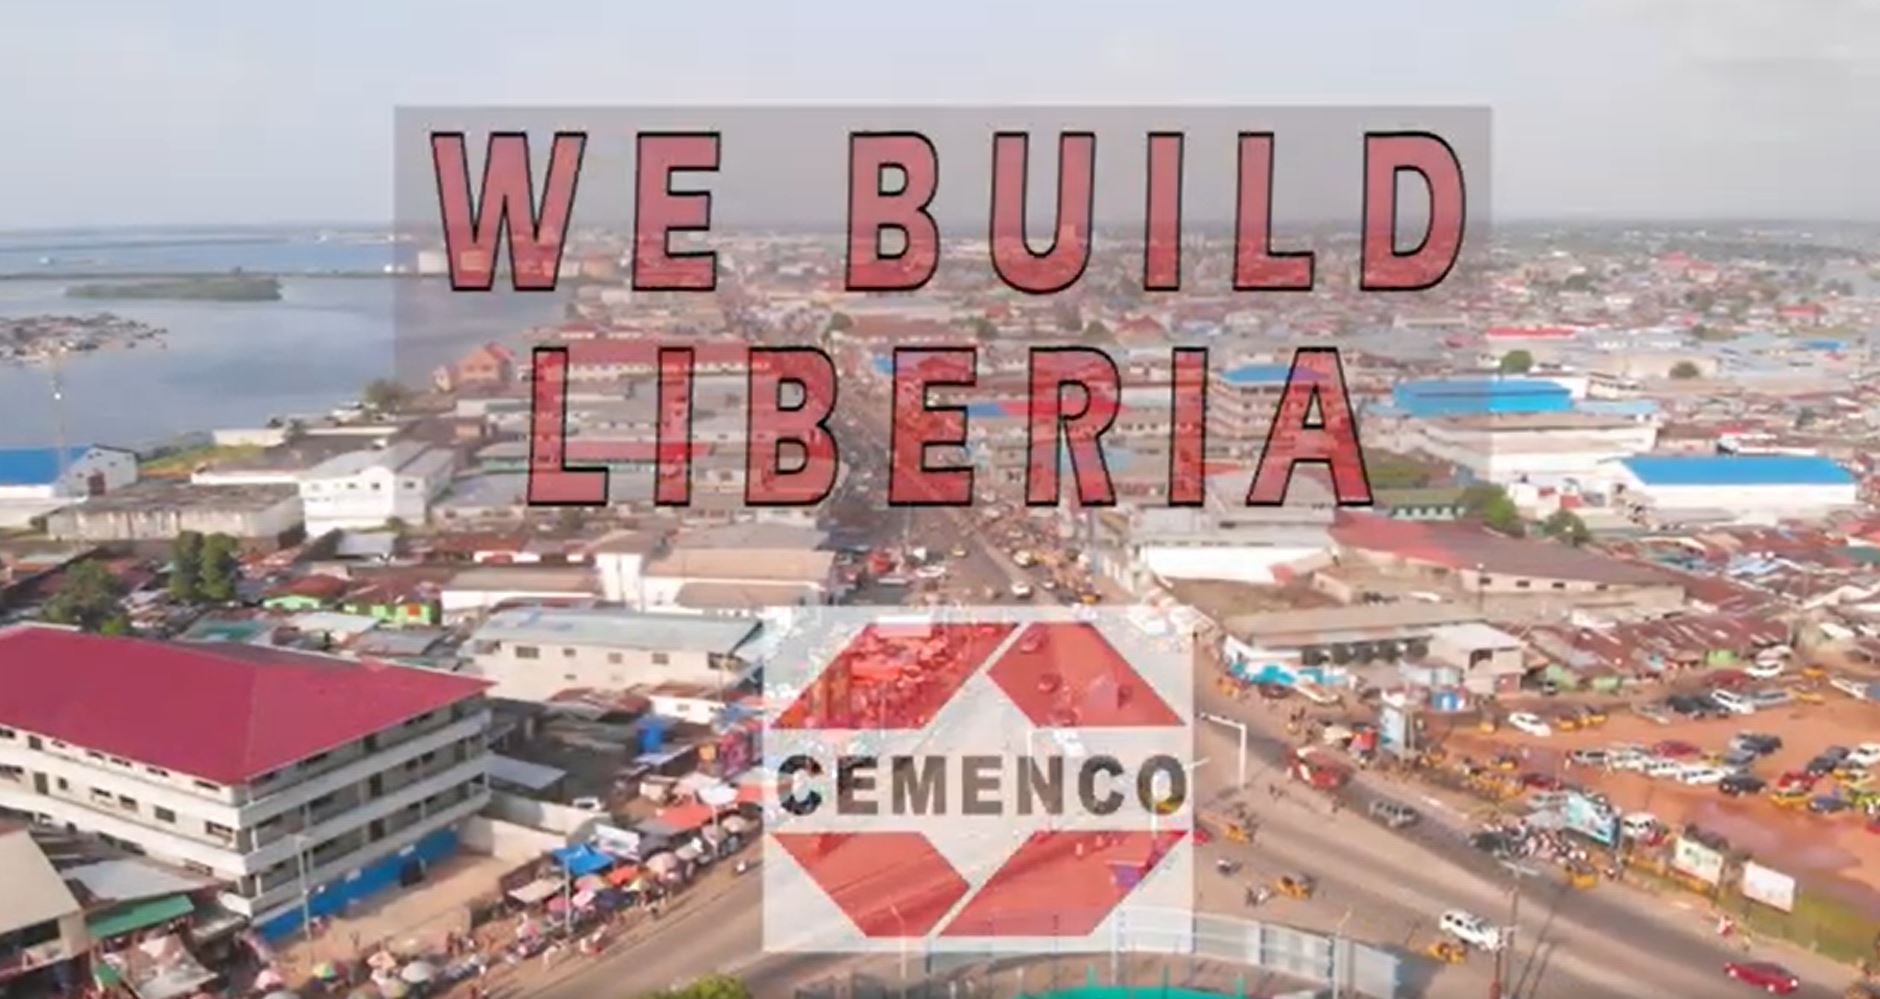 Cemenco - Liberia Cement Corporation